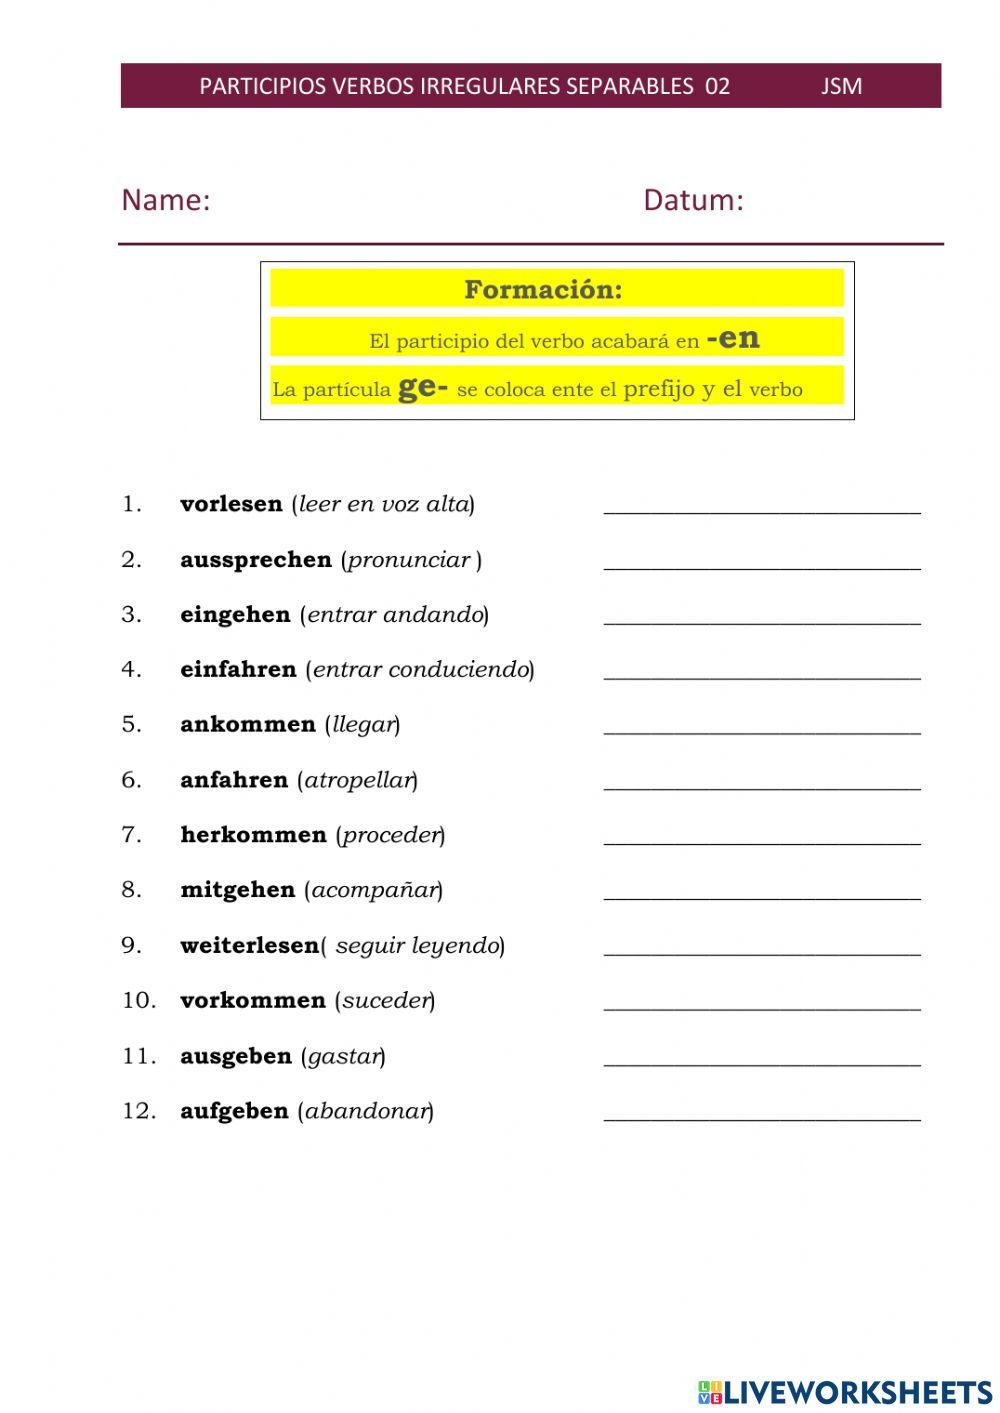 Participio II verbos separables irregulares 02